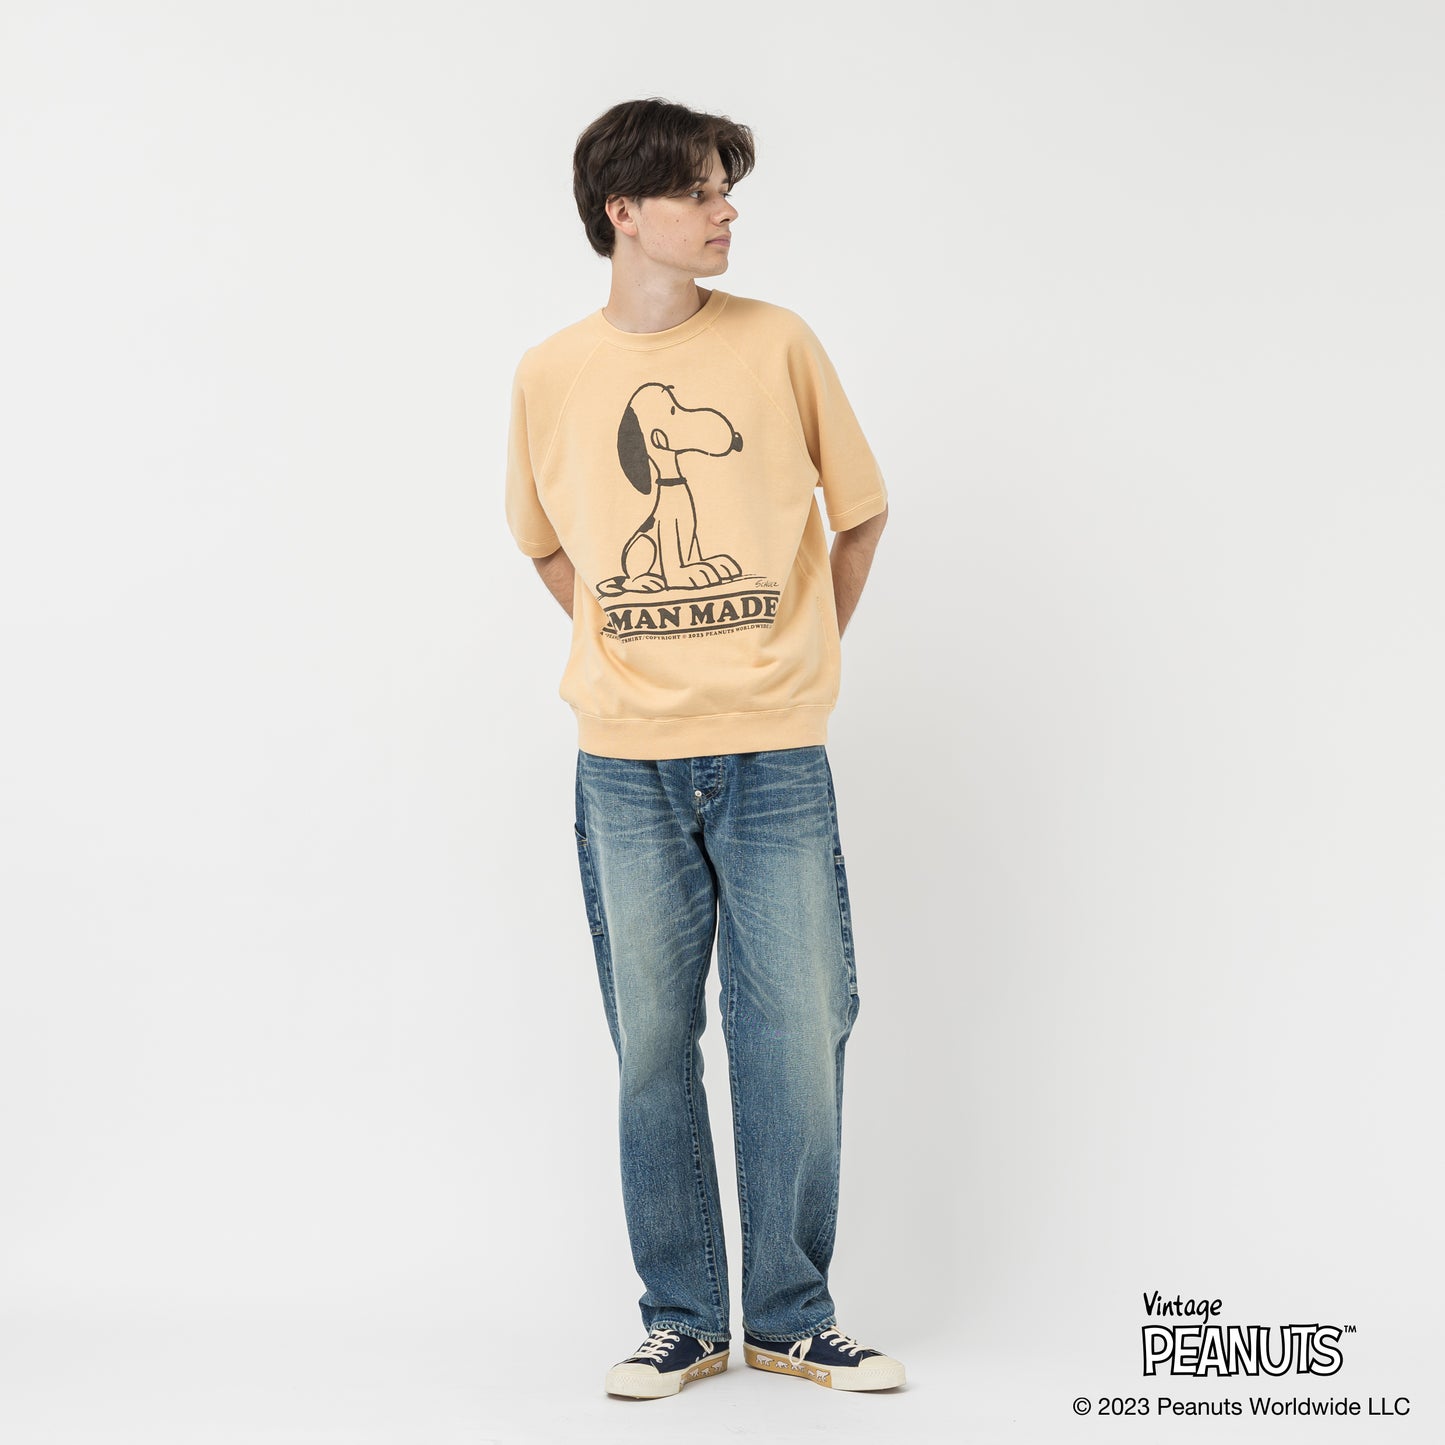 20000円で購入させて下さいHUMAN MADE Peanuts S/S Sweatshirt #2Blue